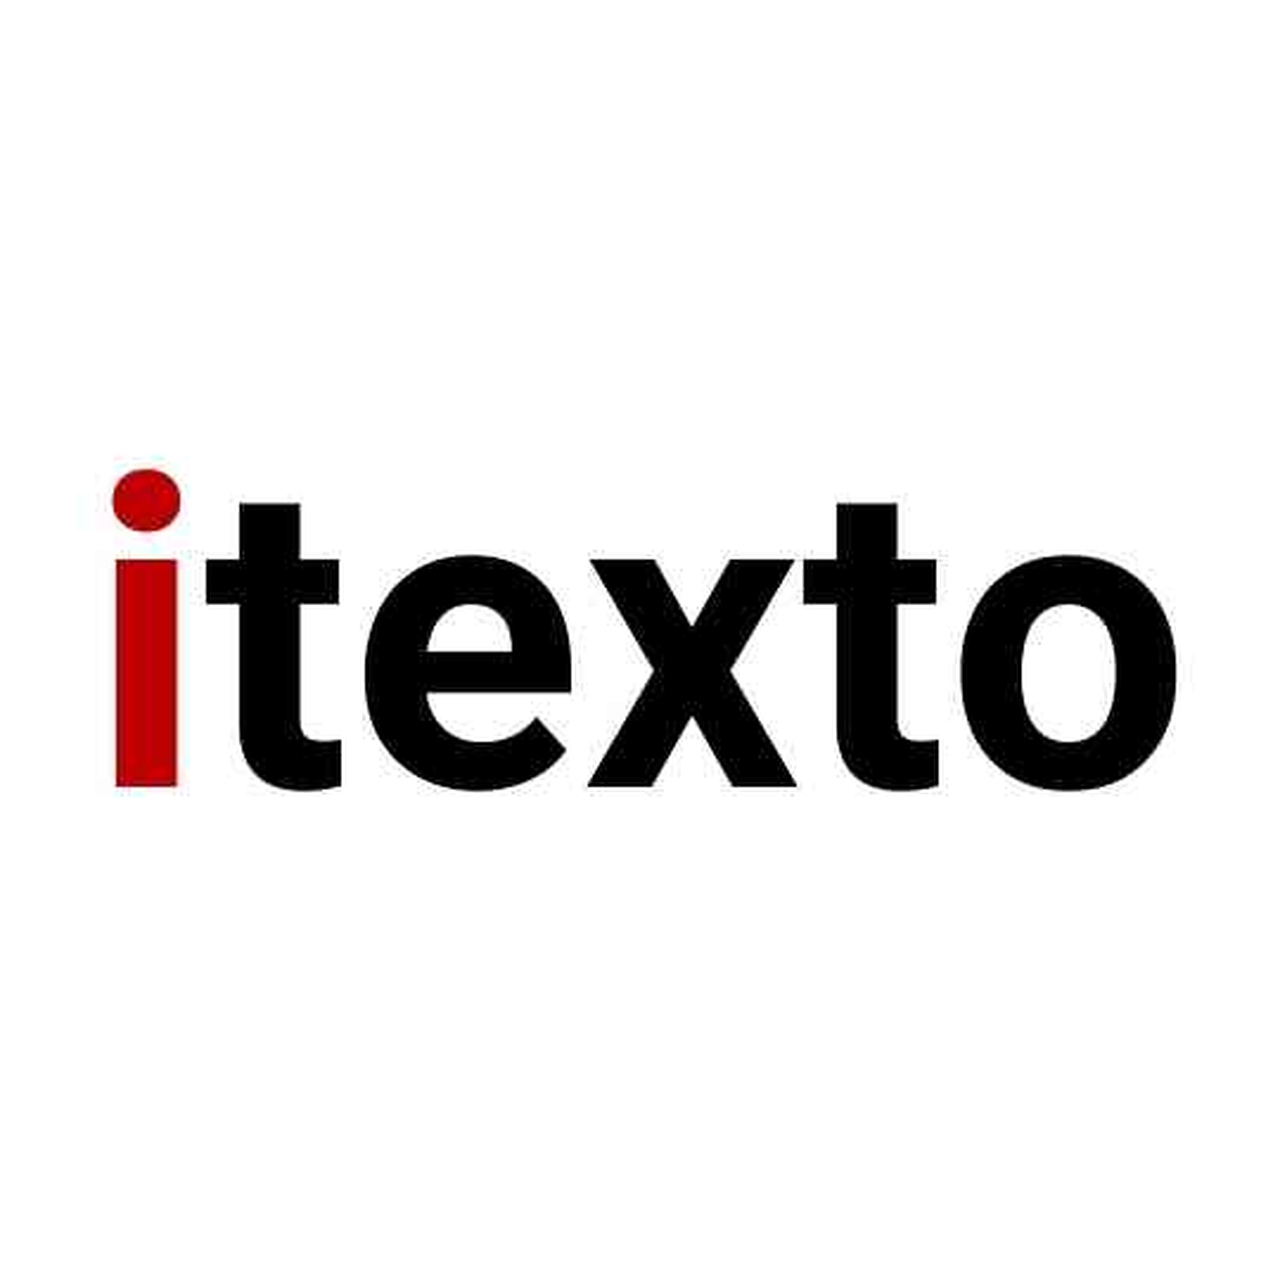 (c) Itexto.com.br